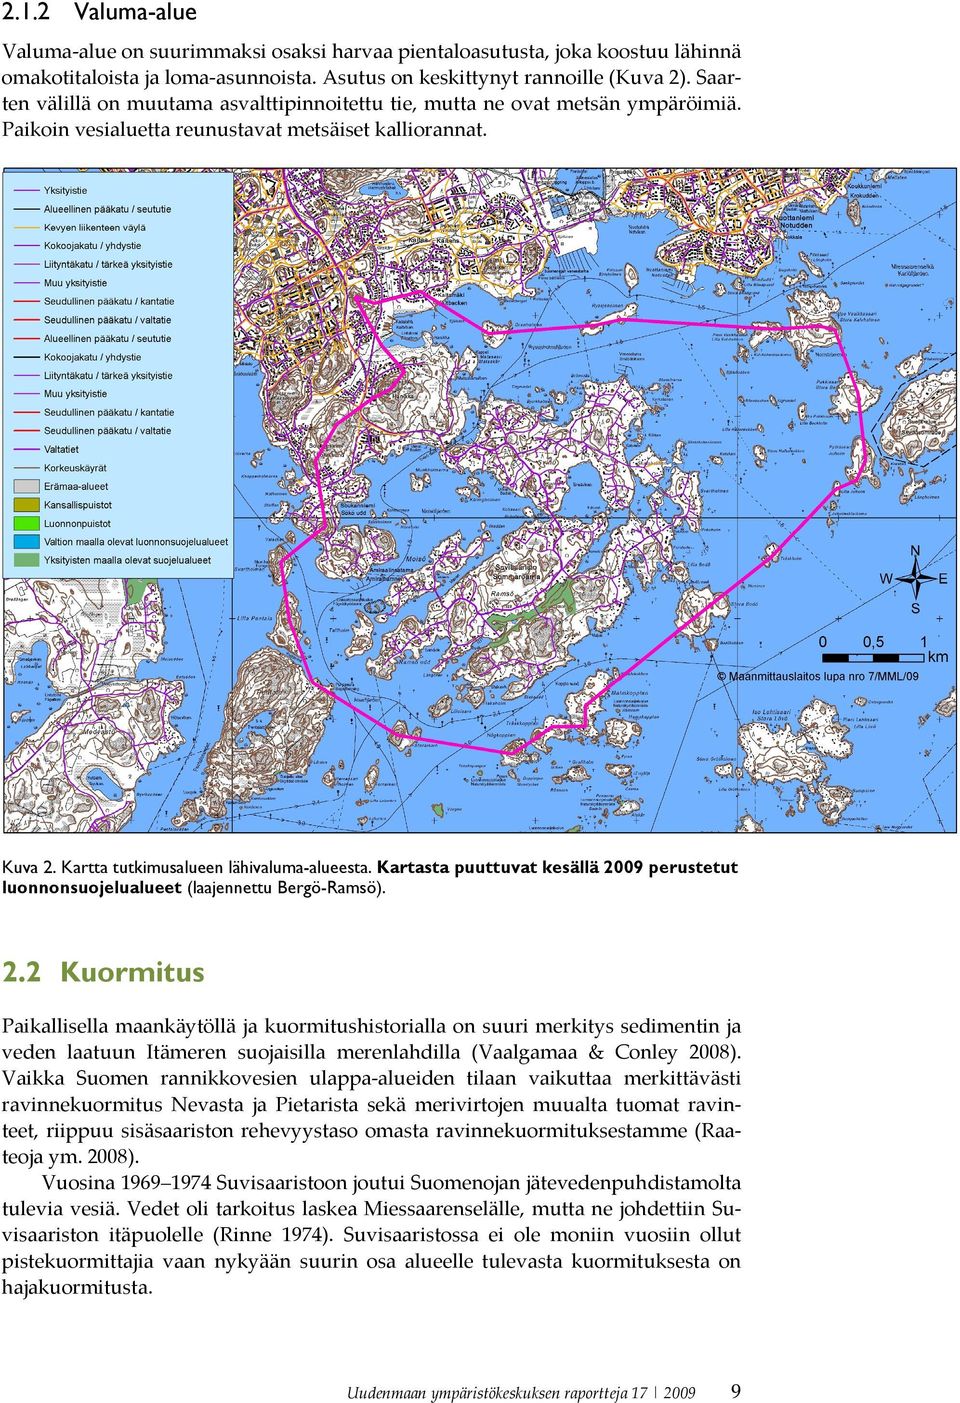 Kartasta puuttuvat kesällä 2009 perustetut luonnonsuojelualueet (laajennettu Bergö-Ramsö). 2.2 Kuormitus Paikallisella maankäytöllä ja kuormitushistorialla on suuri merkitys sedimentin ja veden laatuun Itämeren suojaisilla merenlahdilla (Vaalgamaa & Conley 2008).